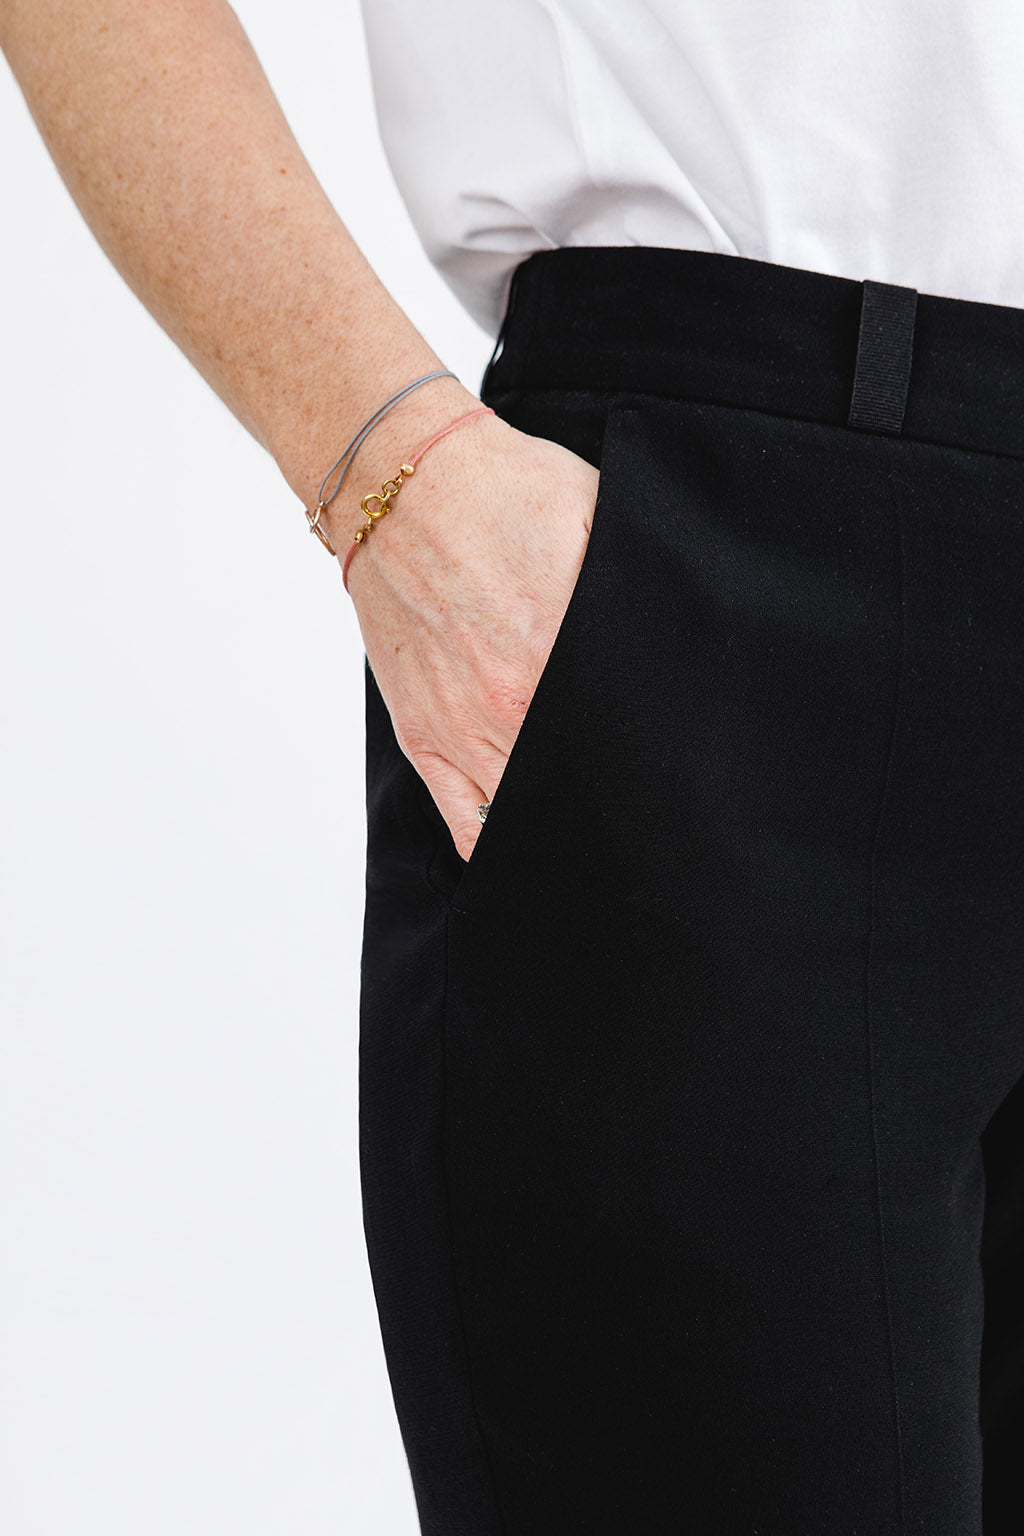 schwarze Anzughose schmales Bein Damen mit weißem Shirt Detailansicht Hosentasche